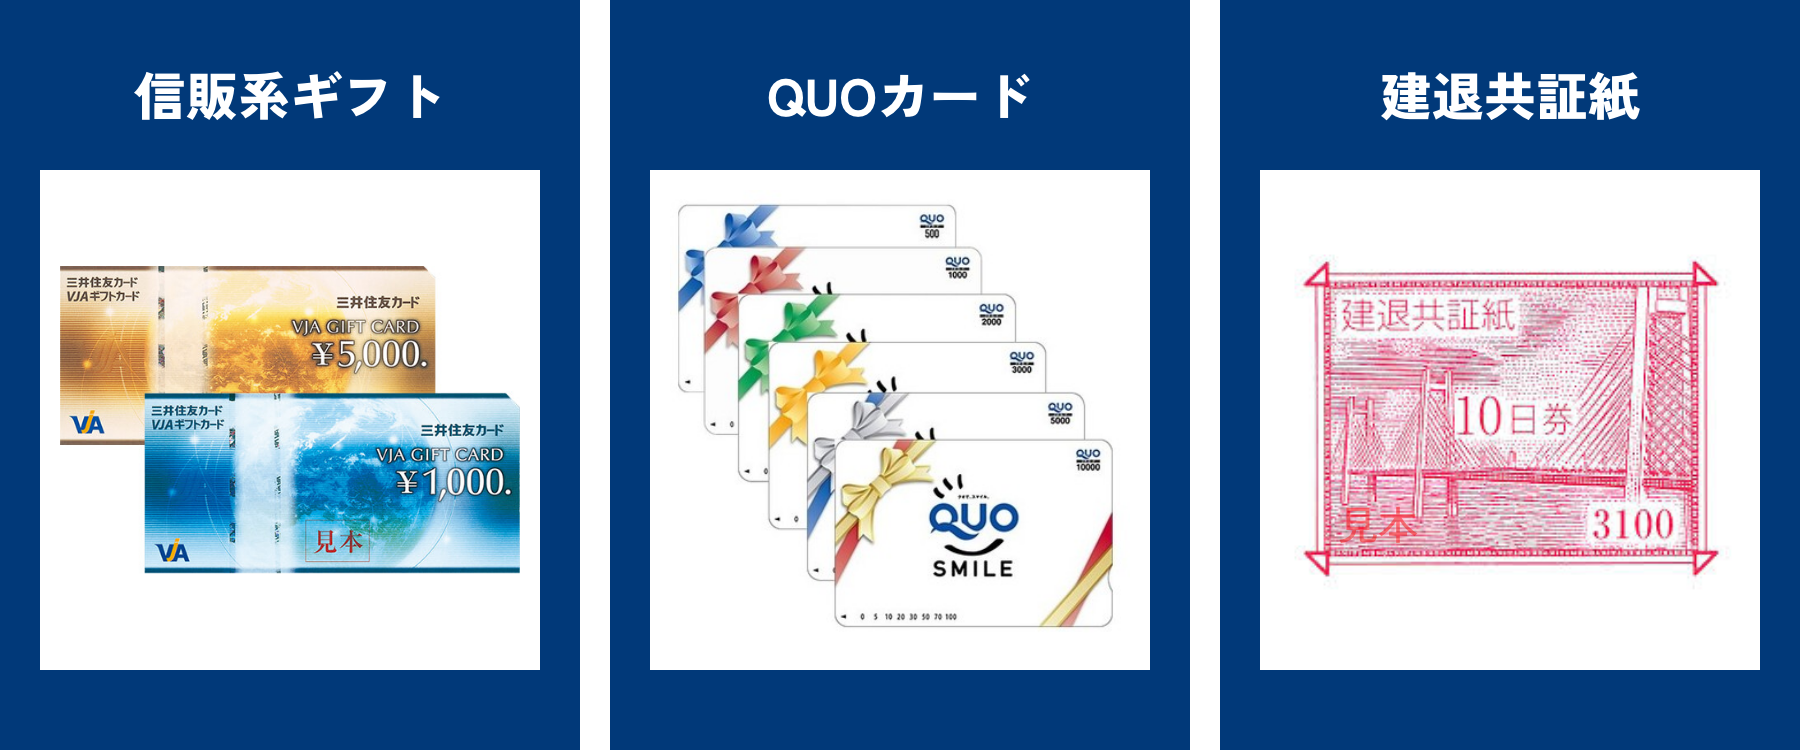 左:信販系ギフト、中:QUOカード、右:建退共証紙